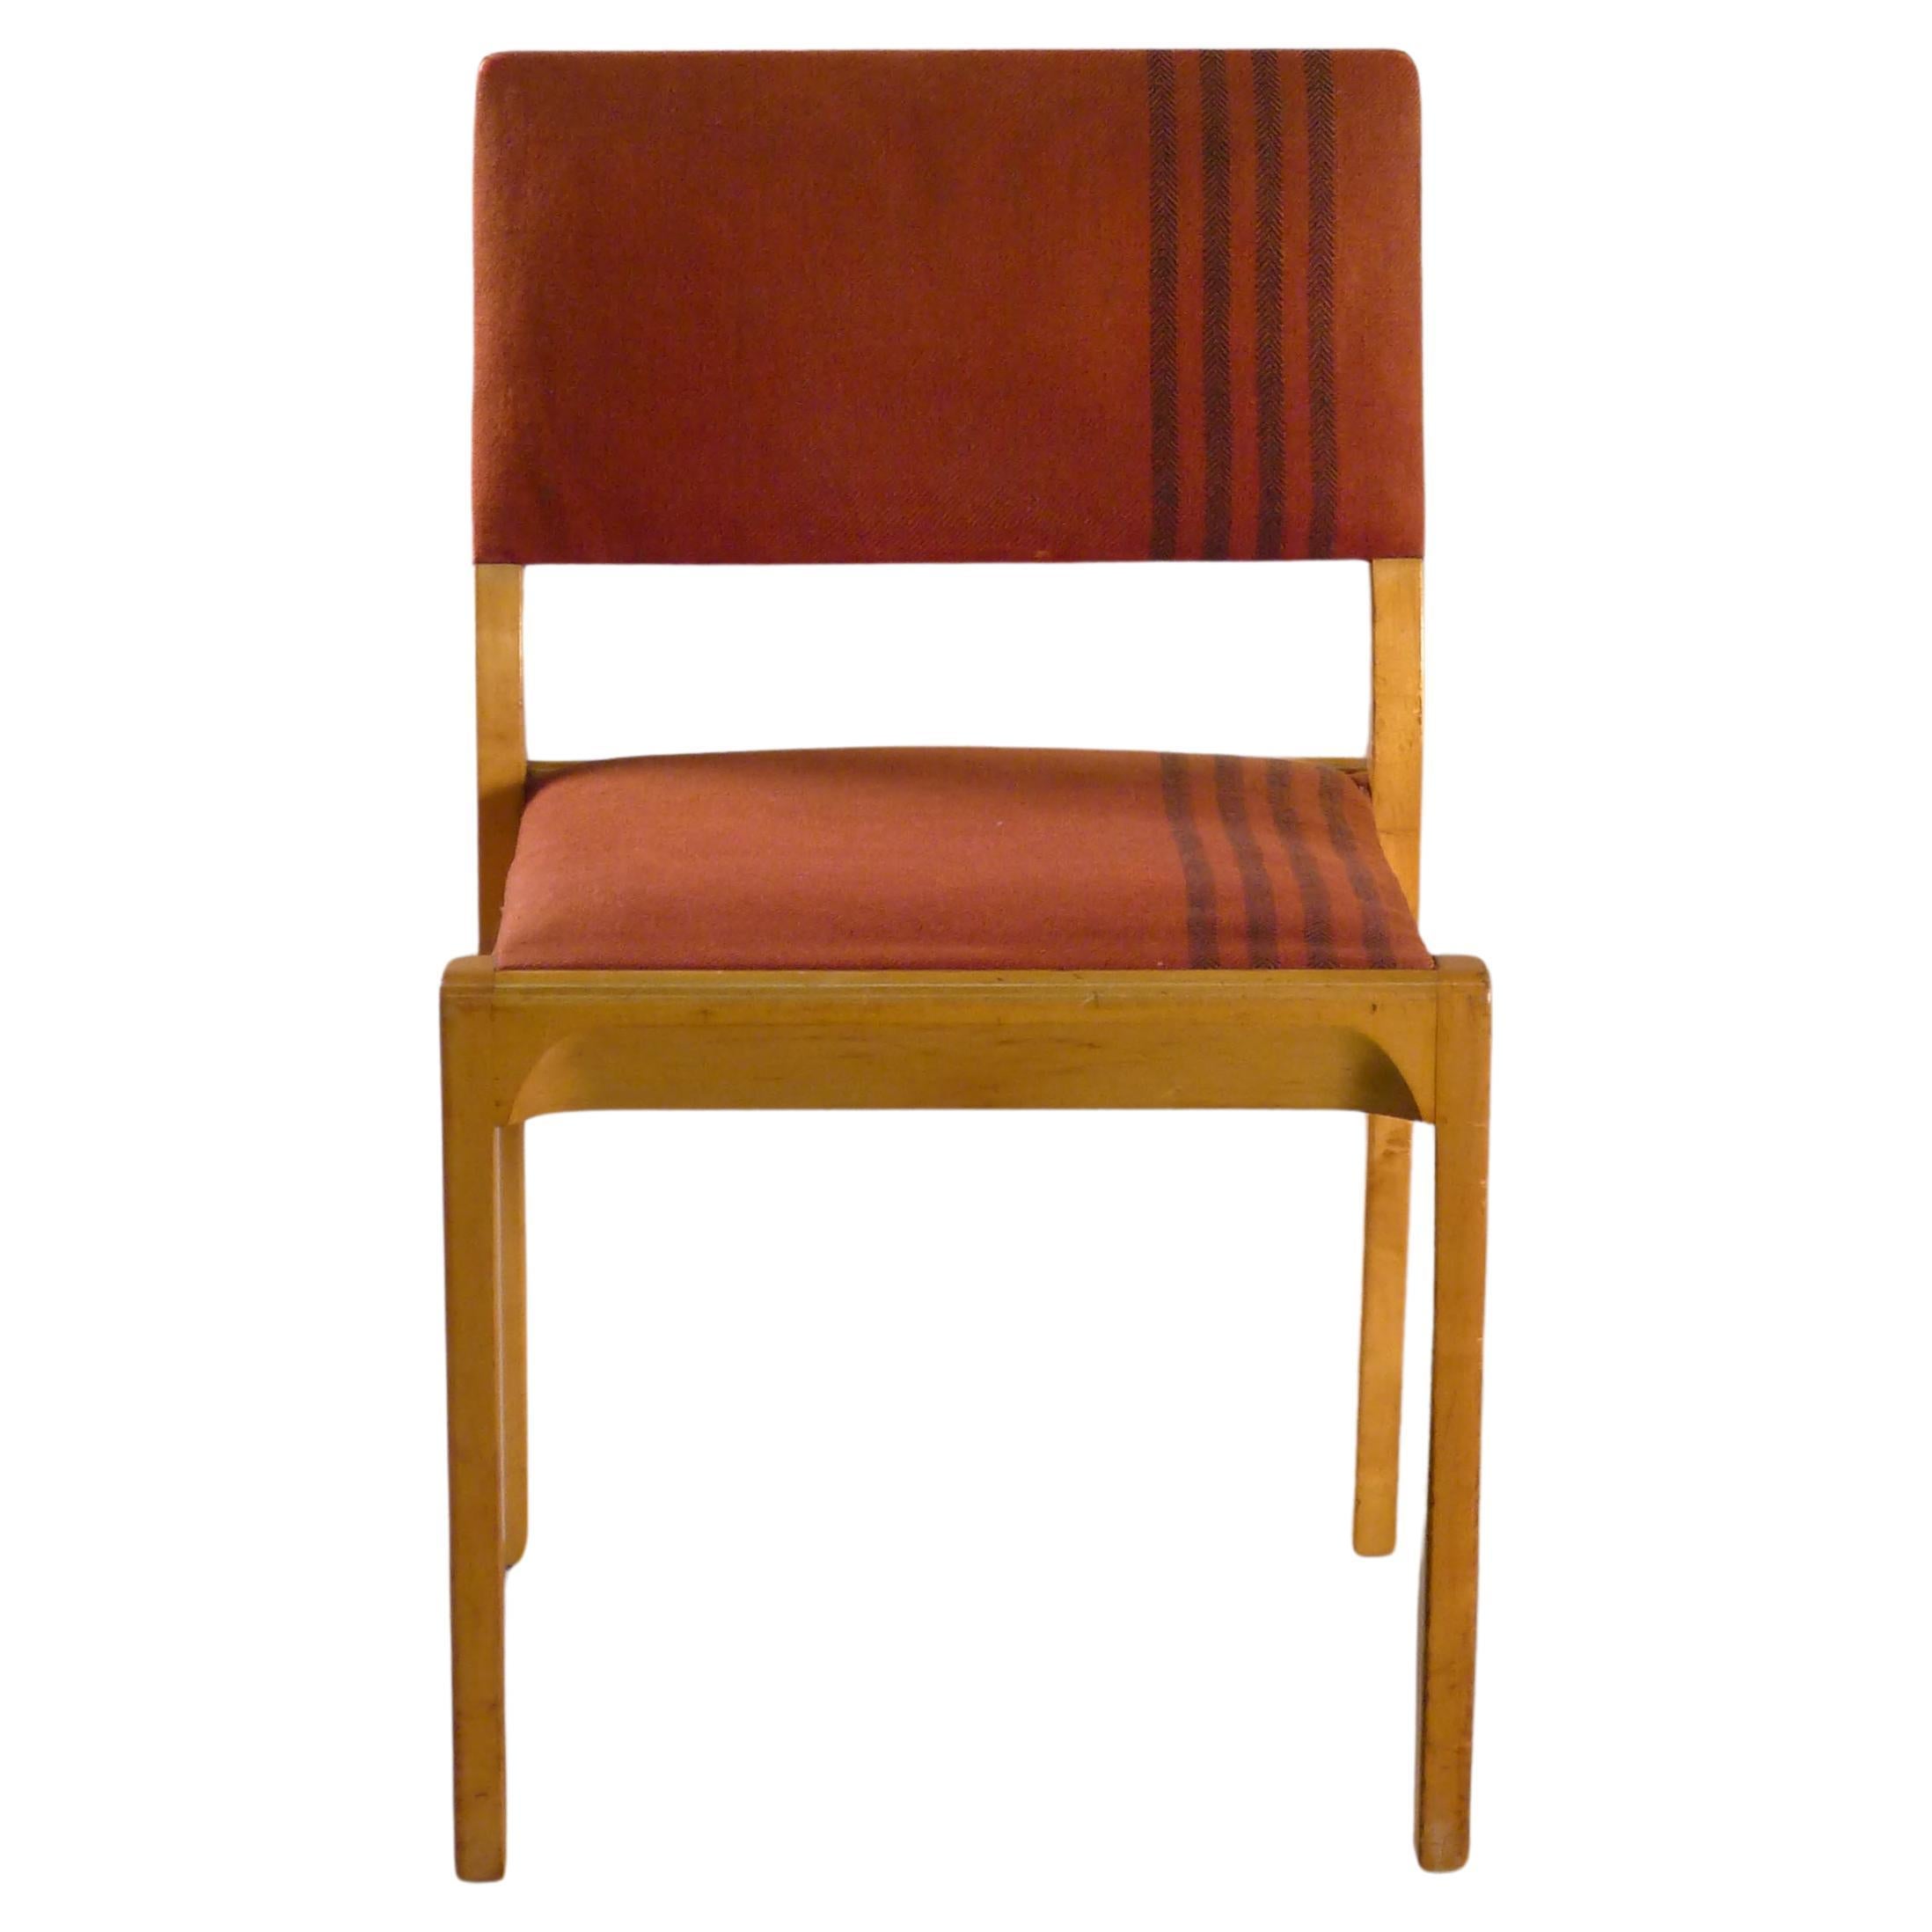 Alvar Aalto, Modell 611, Stapelbarer Stuhl von Finmar, Aino Aalto zugeschriebener Stoff